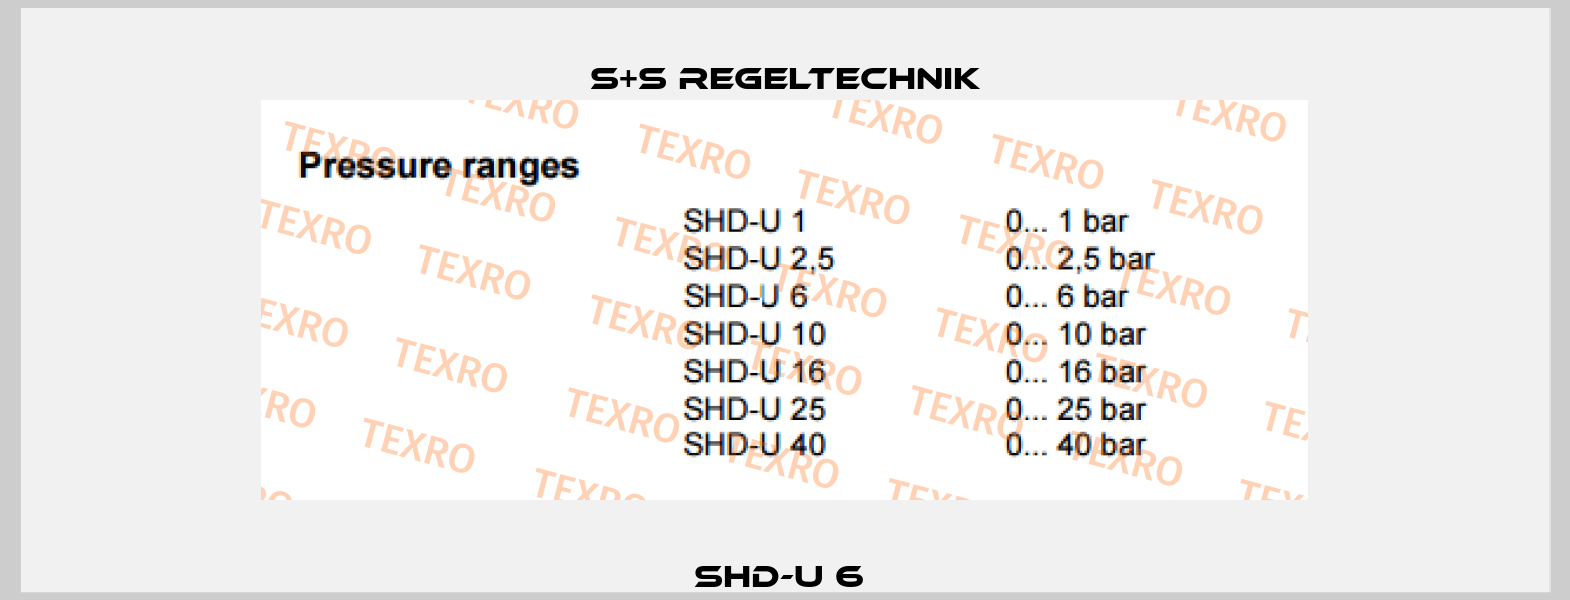 SHD-U 6  S+S REGELTECHNIK